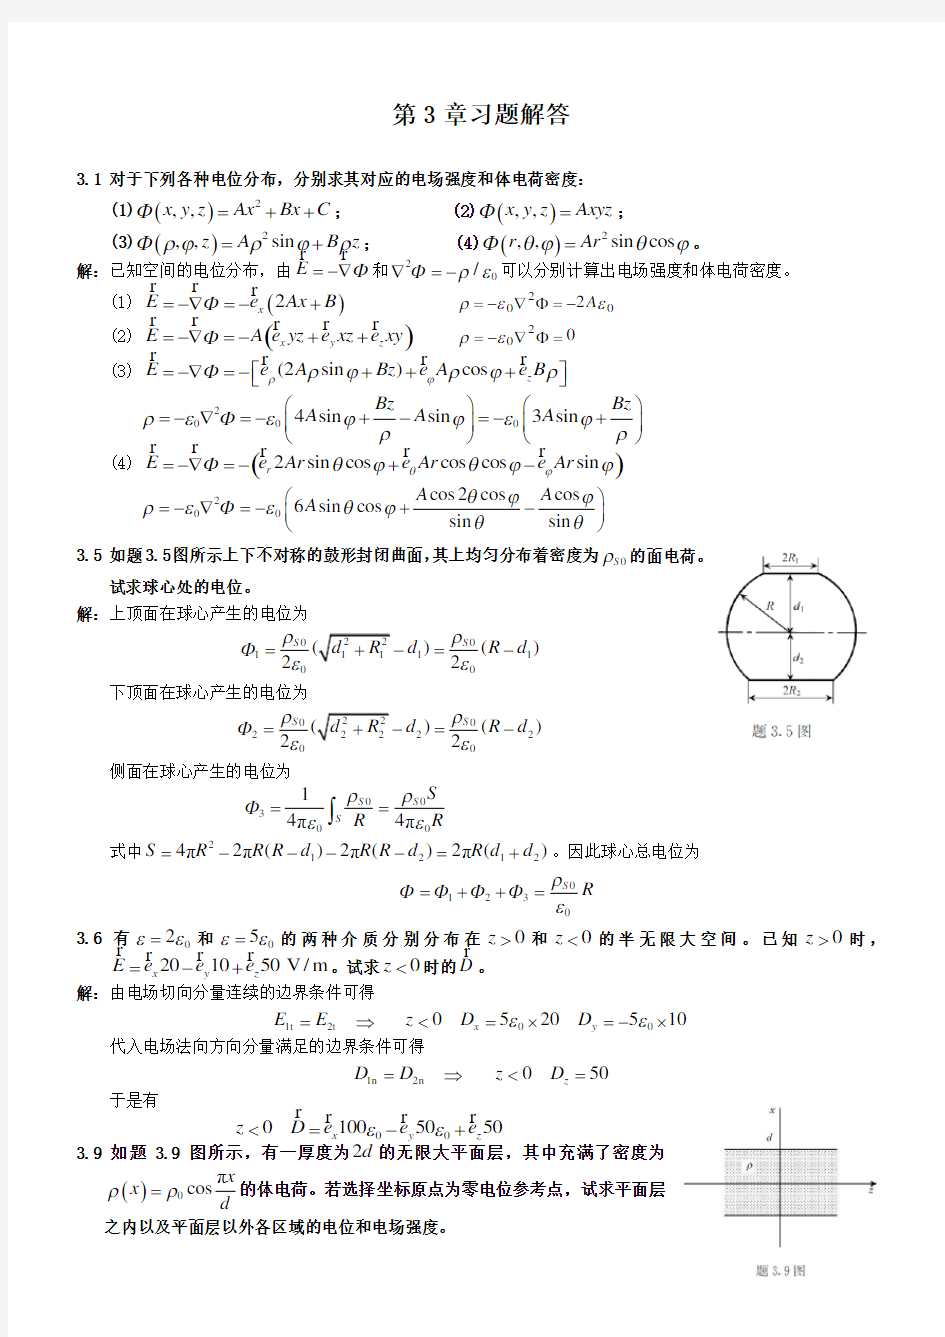 电磁场与电磁波理论(第二版)(徐立勤-曹伟)第3章习题解答